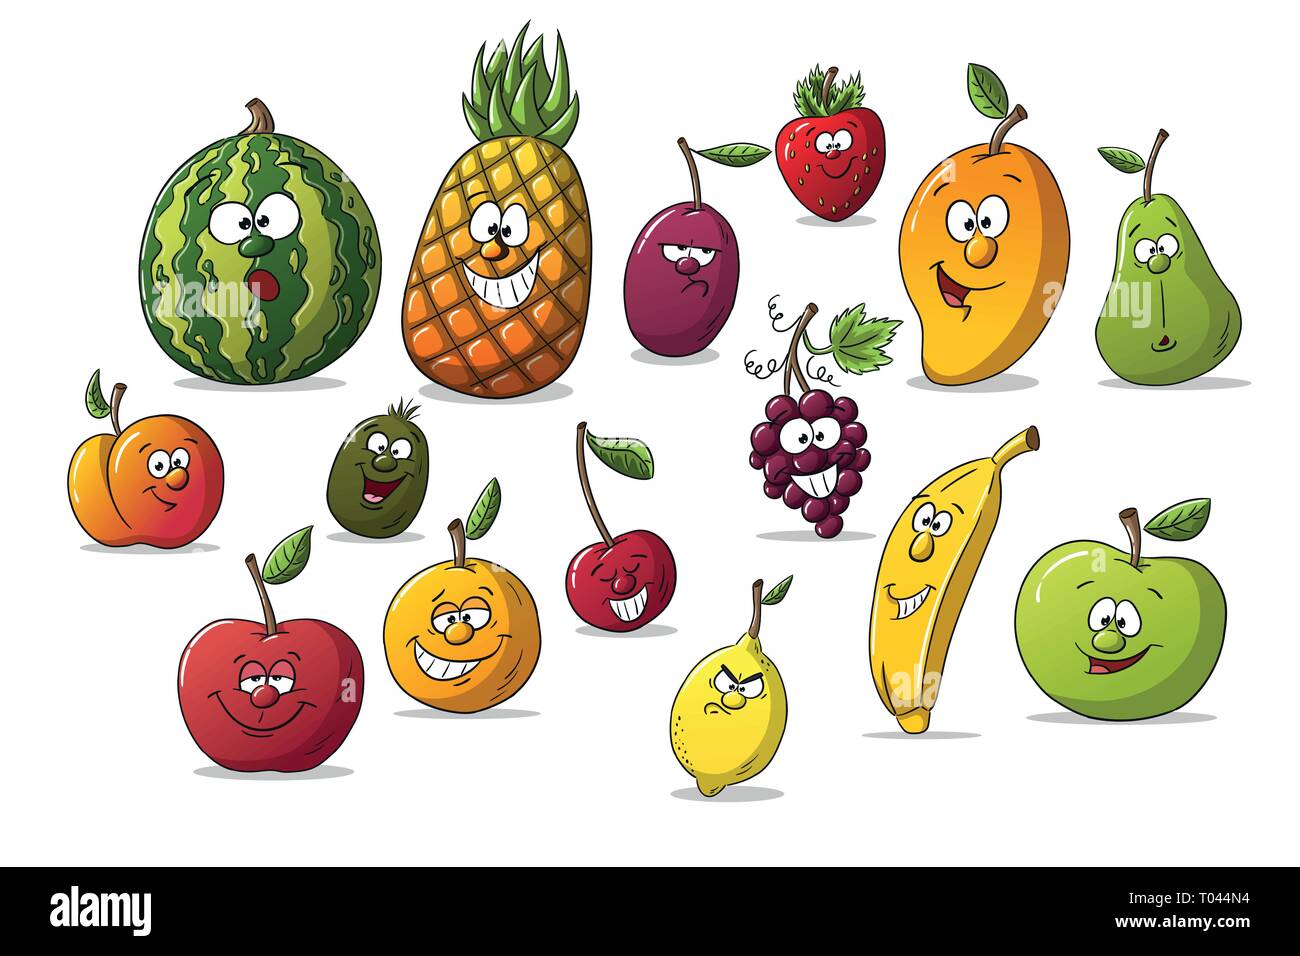 Sammlung von einigen verschiedenen cartoon Früchte. Auf weißem Hintergrund, mit separaten Ebenen. Stock Vektor